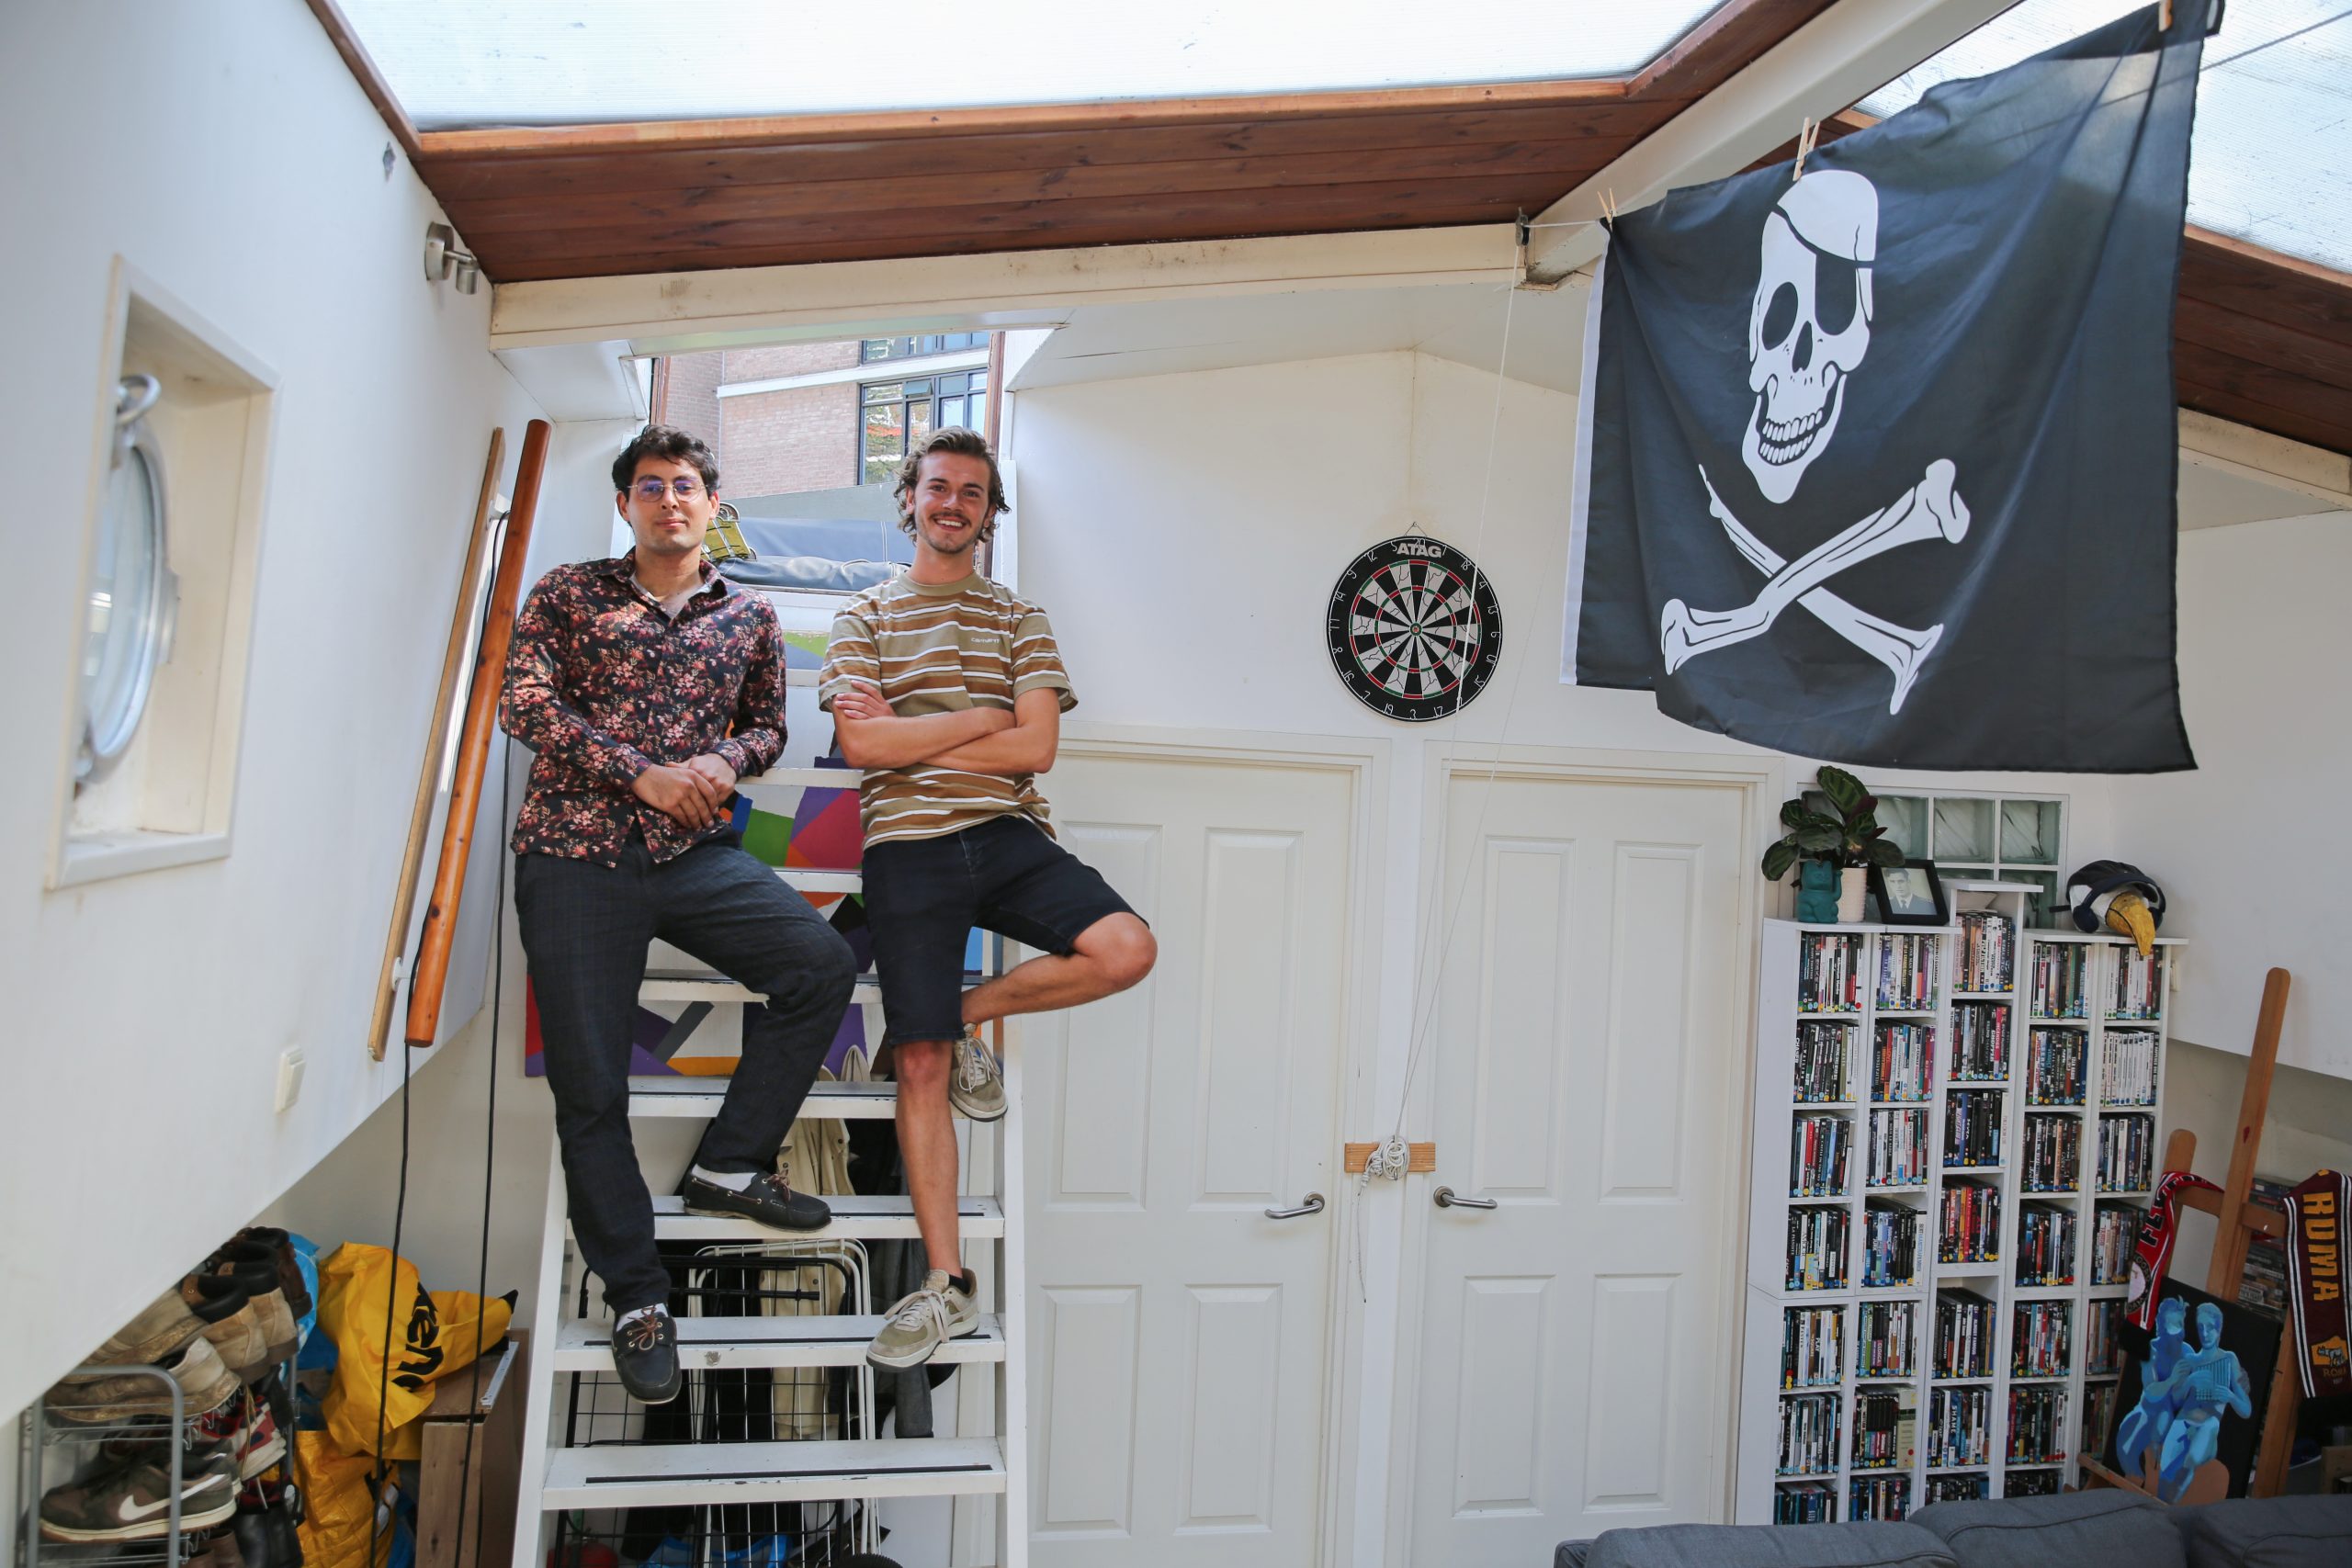 'Als welkomstgeschenk op onze housewarming kregen we een grote piratenvlag.'